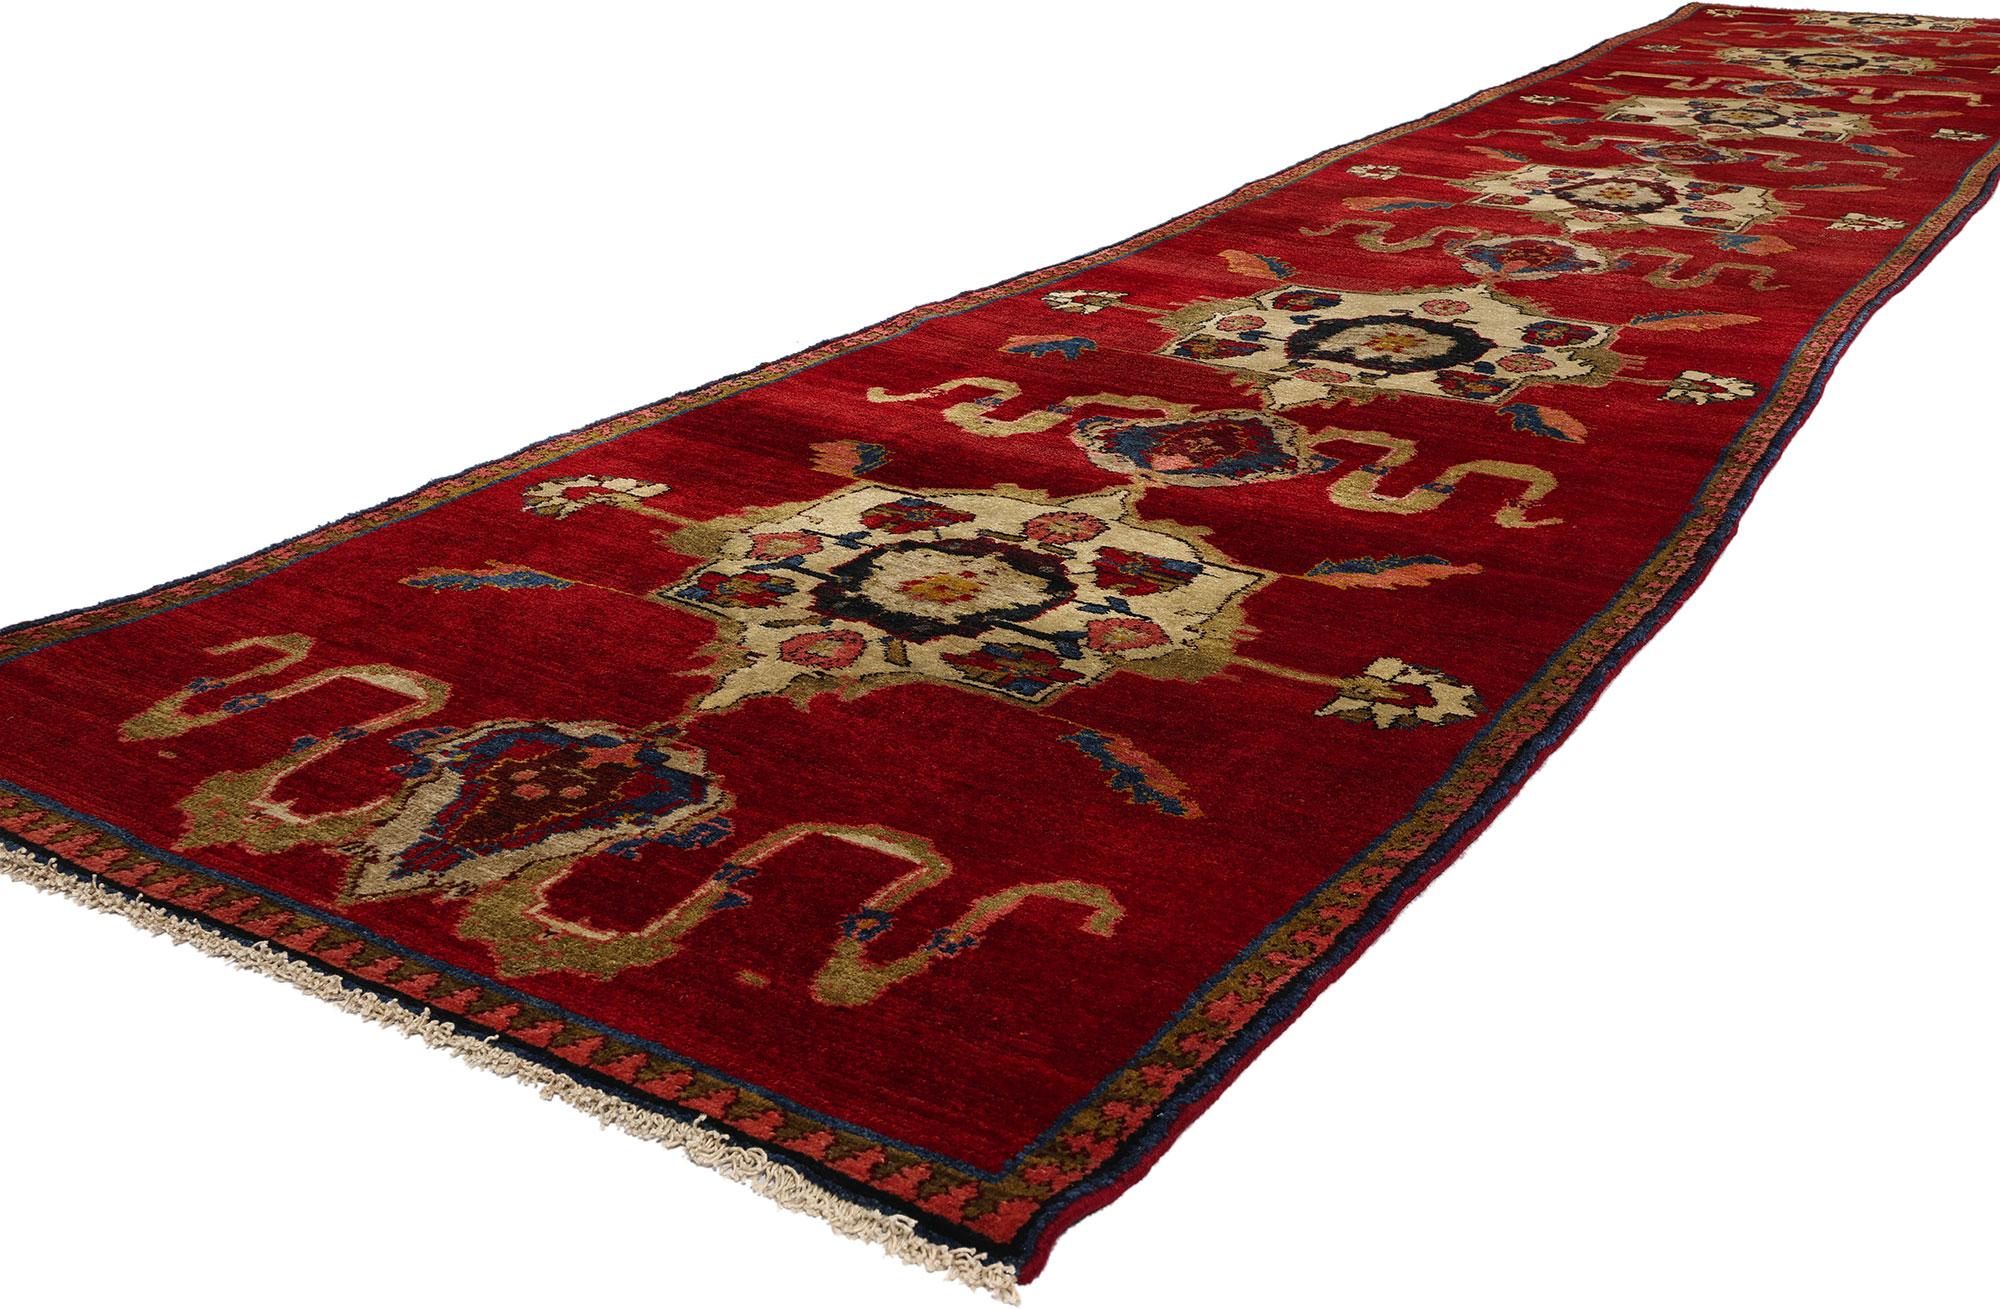 53870 Vintage Red Turkish Oushak Rug Runner, 03'01 x 17'03. Les tapis turcs Oushak sont des tapis longs et étroits tissés dans la région d'Oushak, dans l'ouest de la Turquie. Ces chemins de roulement présentent généralement les motifs et les